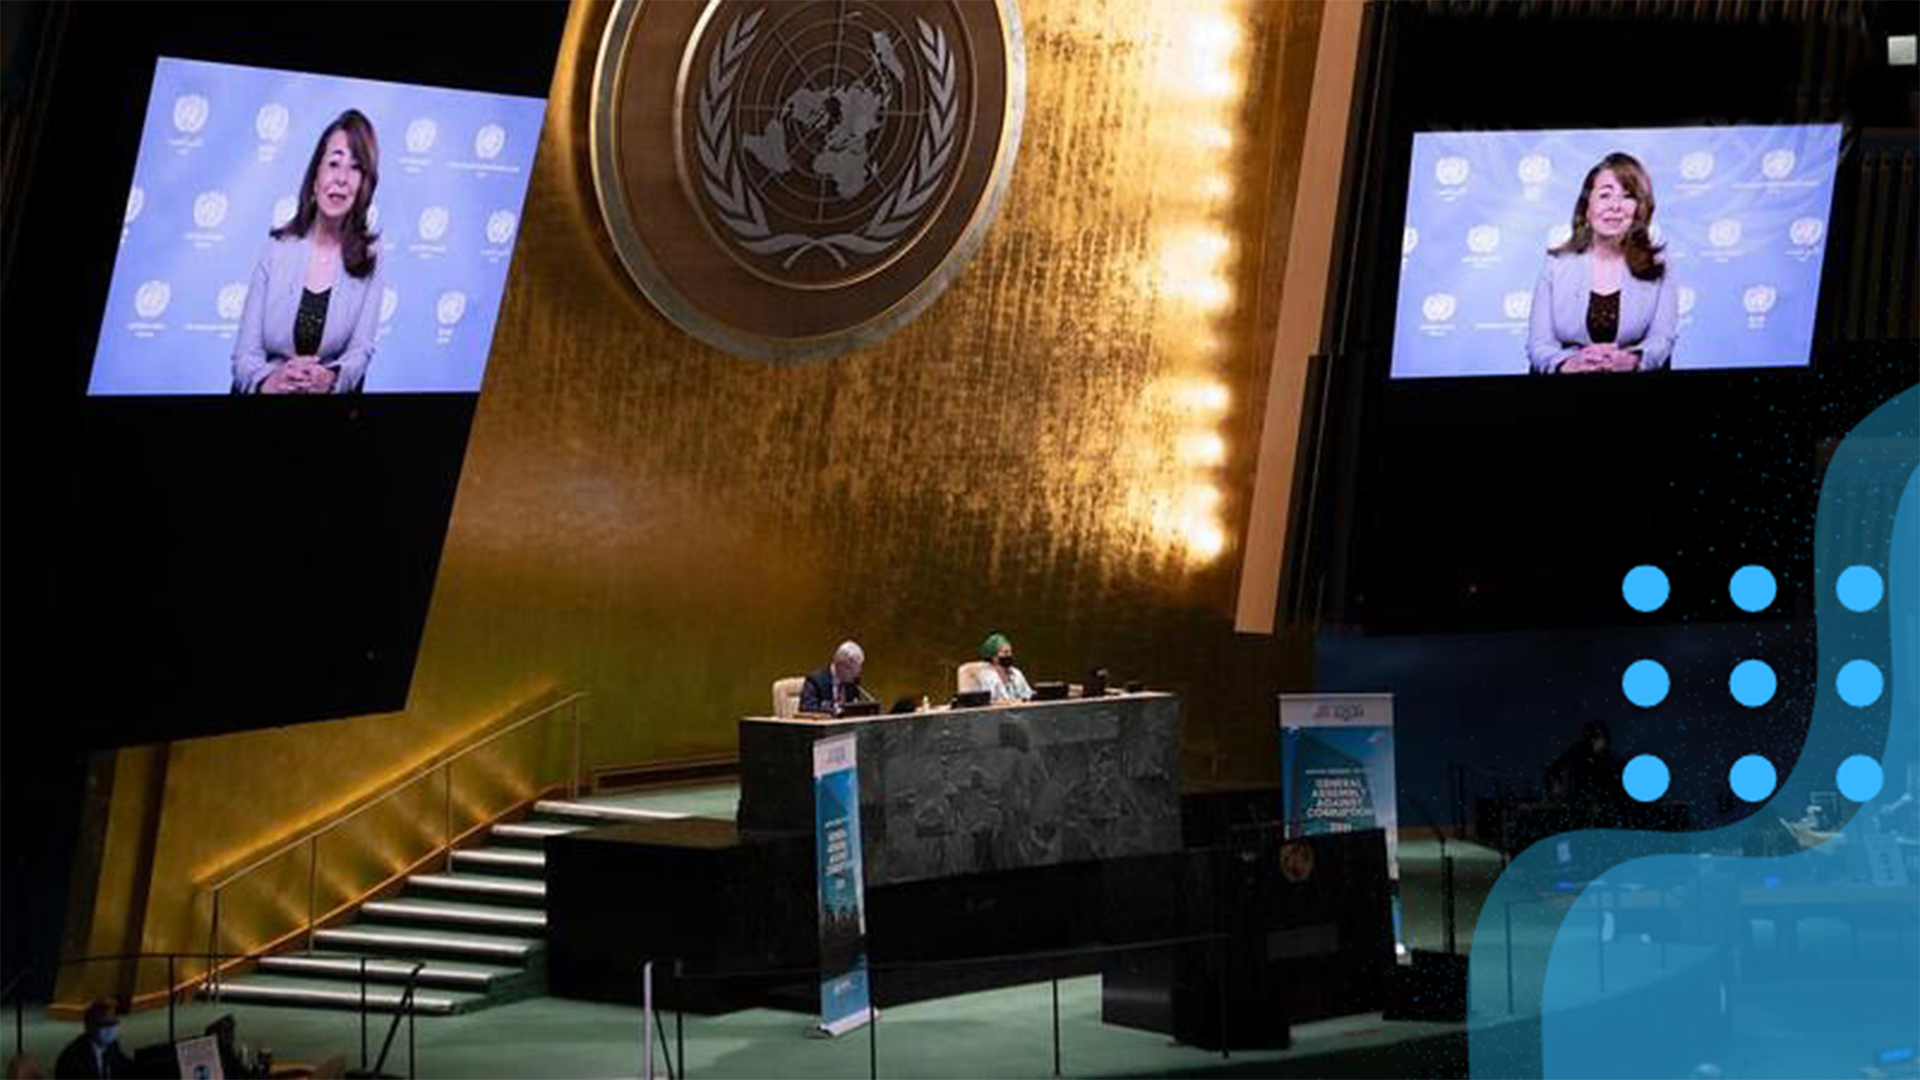 ООН стремится сформировать глобальную политическую волю для борьбы с коррупцией на специальной сессии